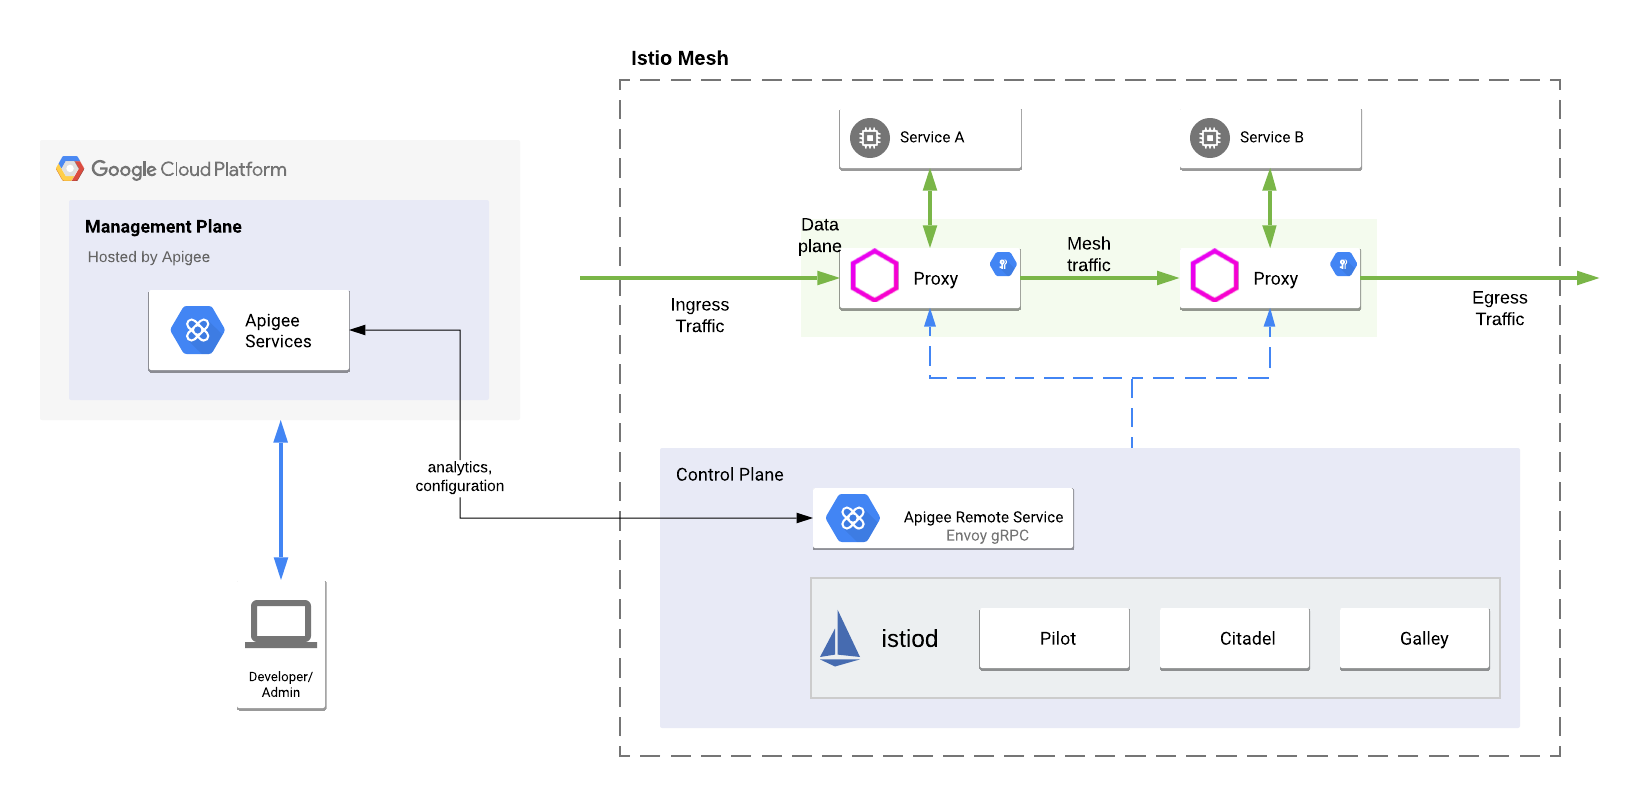 Una vista de alto nivel del adaptador de Envoy integrado en un entorno híbrido de Apigee, que incluye el plano de administración, el plano del entorno de ejecución y los servicios de Google Cloud